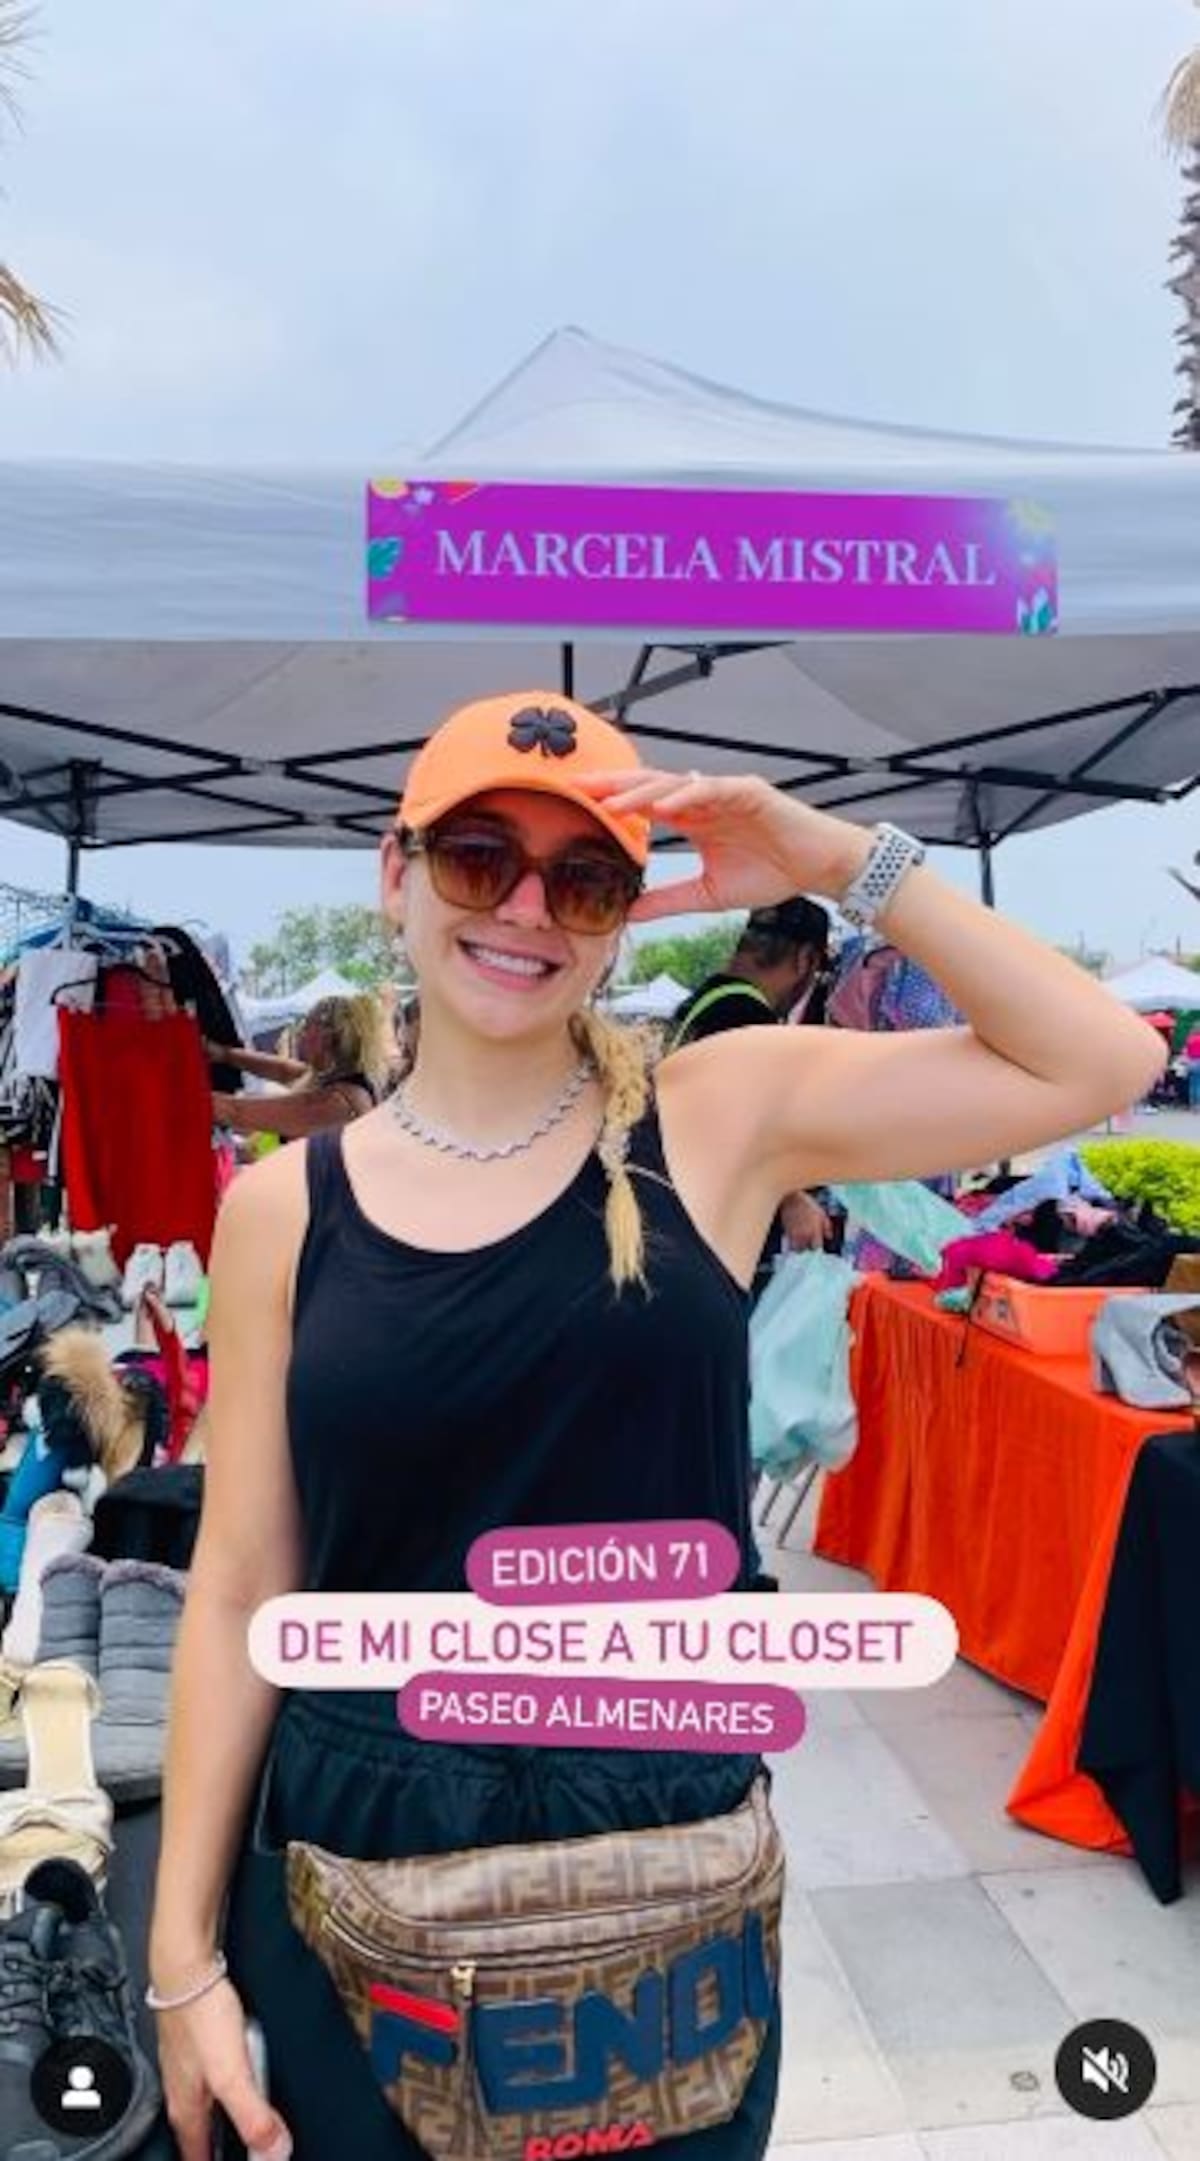 Marcela Mistral sorprende al vender su ropa y zapatos en el tianguis | Captura de pantalla Instagram (musamistral)